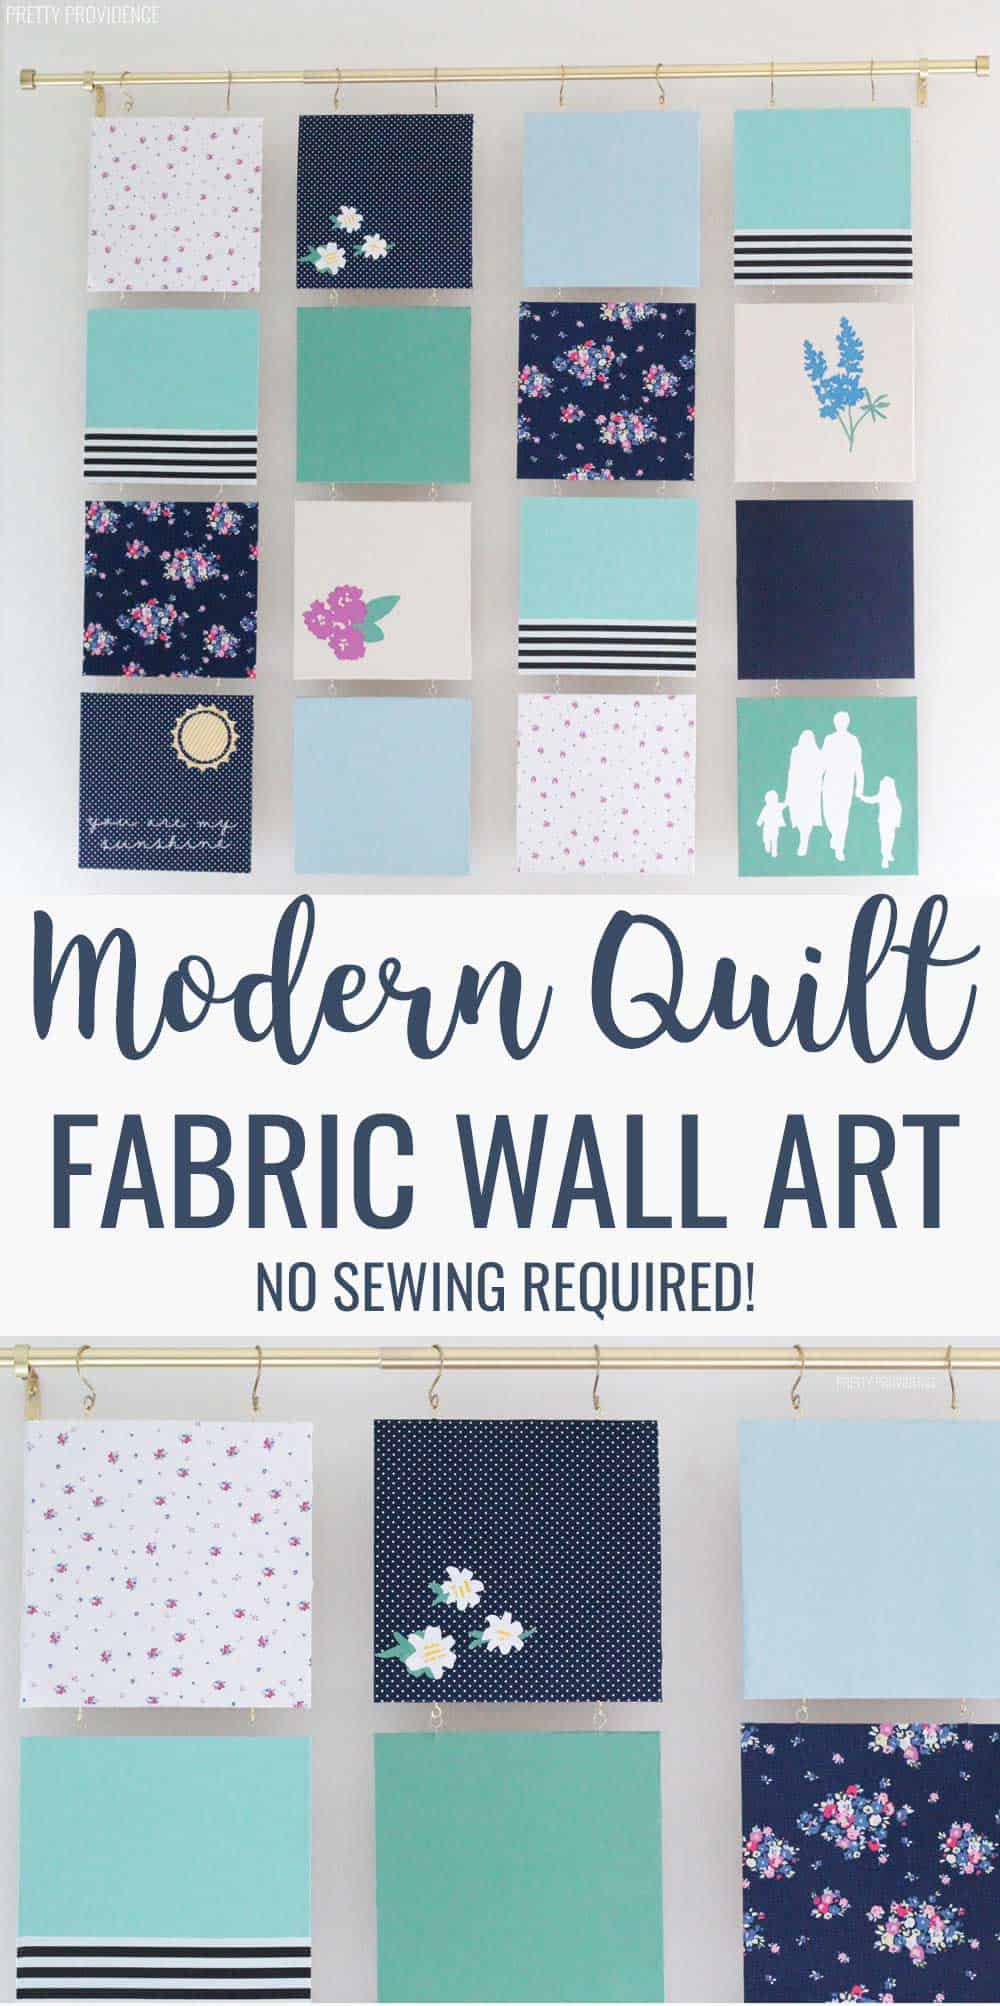 Modern Quilt - Fabric Wall Art